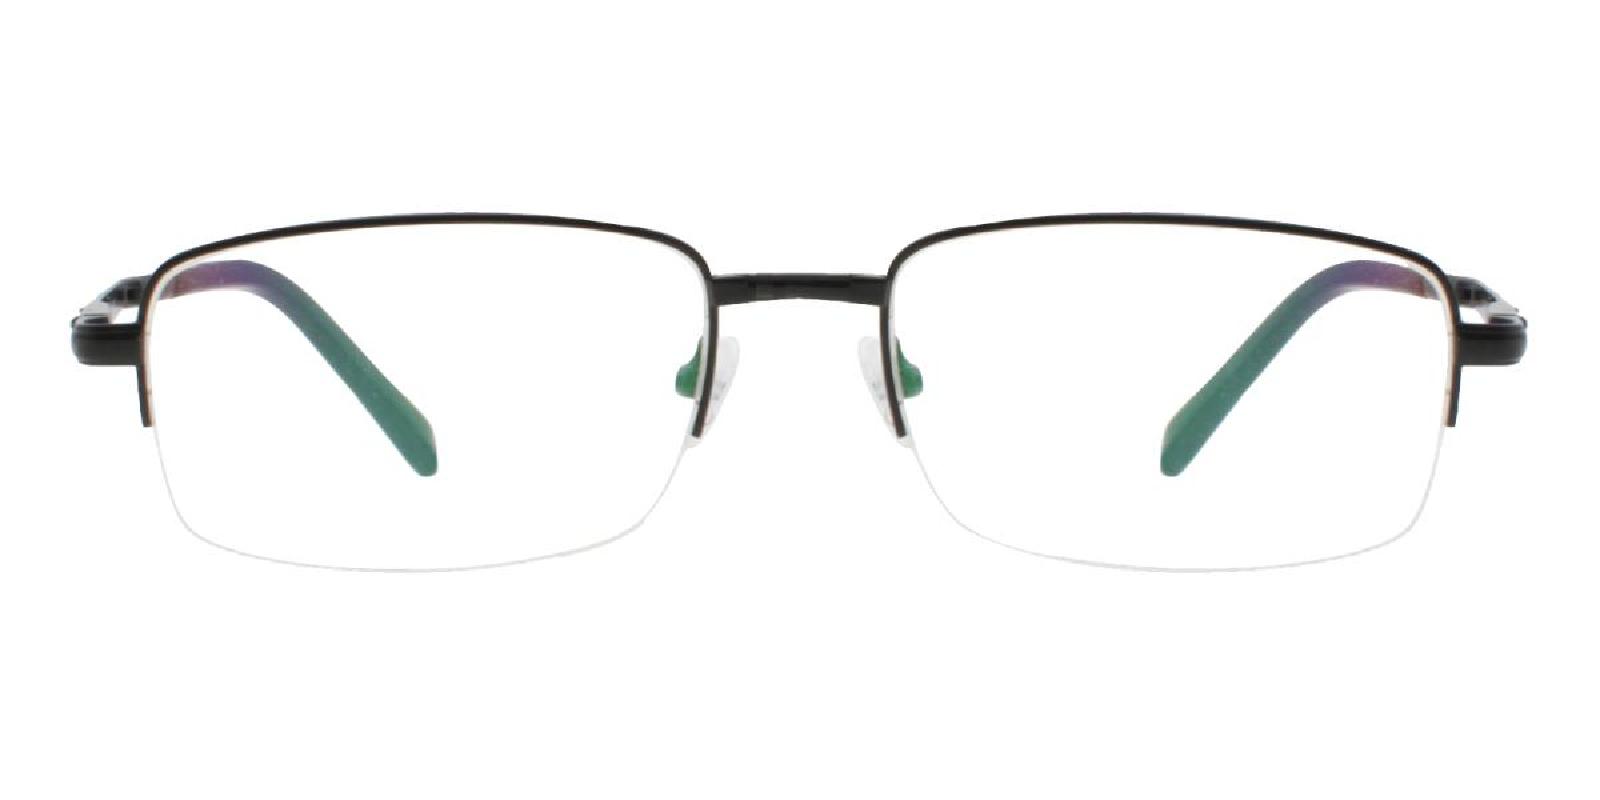 Andrew Foldable Glasses-Black-Rectangle-Metal-Eyeglasses-detail